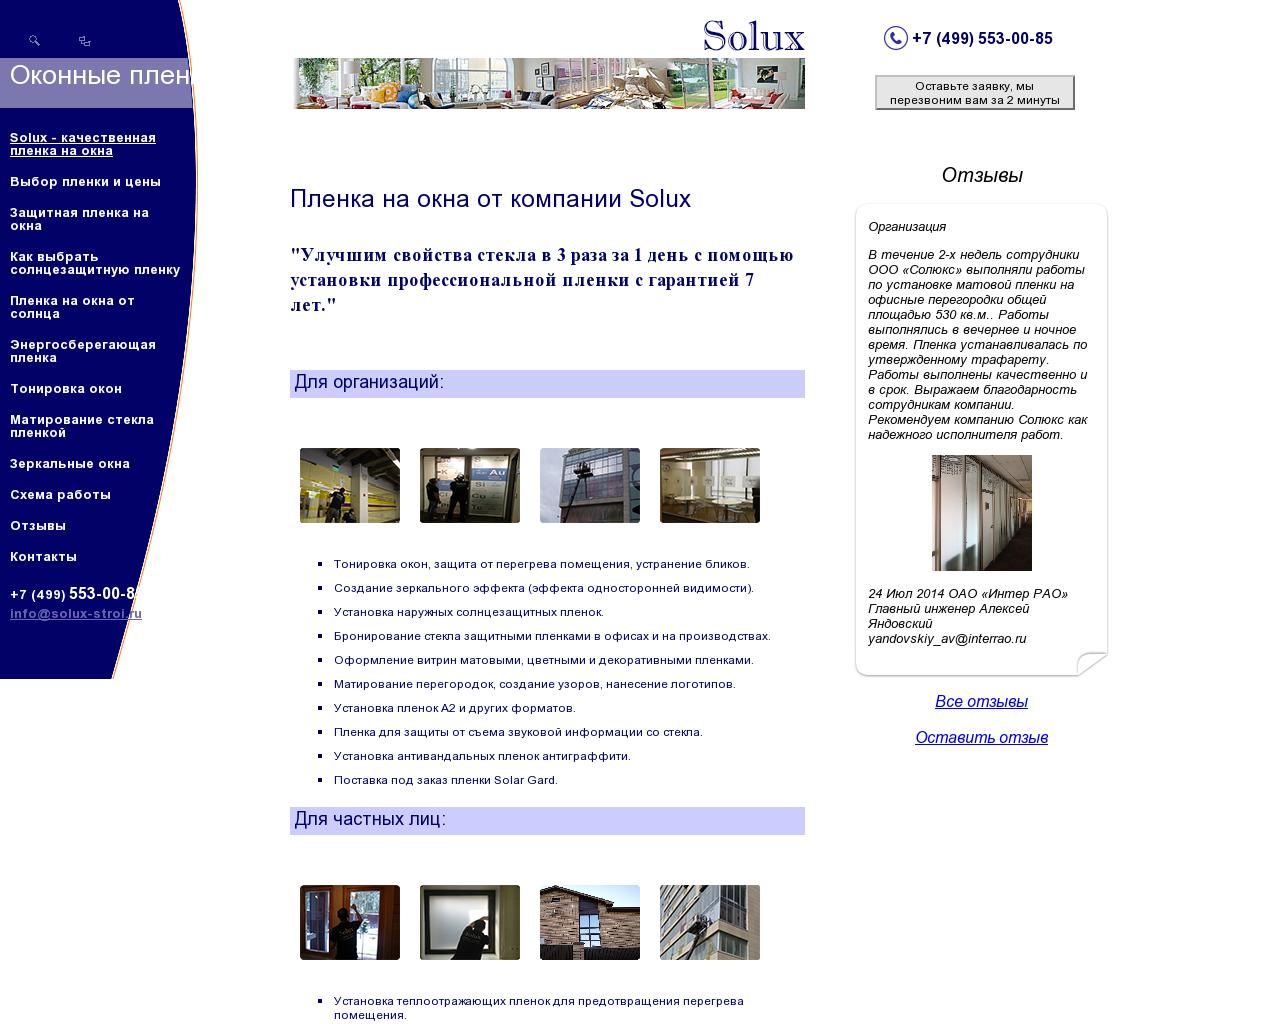 Изображение сайта solux-stroi.ru в разрешении 1280x1024